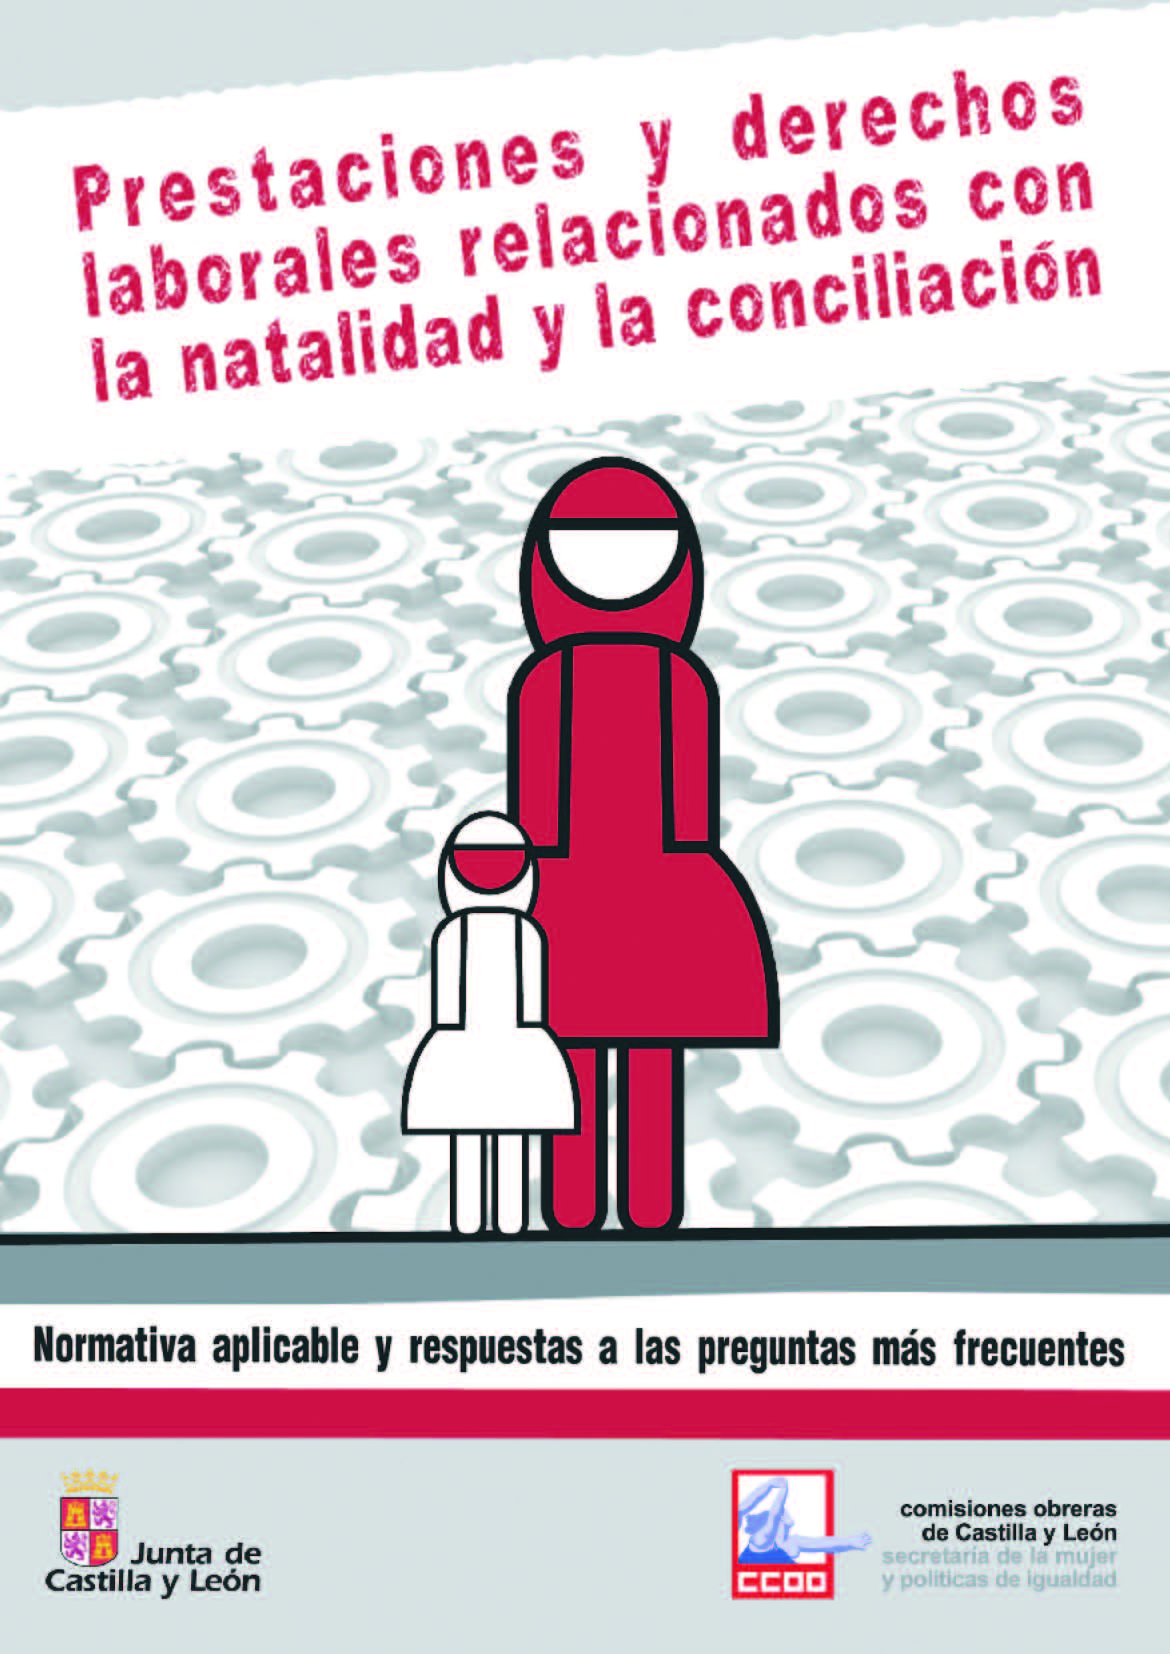 Prestaciones y derechos laborales relacionados con la natalidad y la conciliación